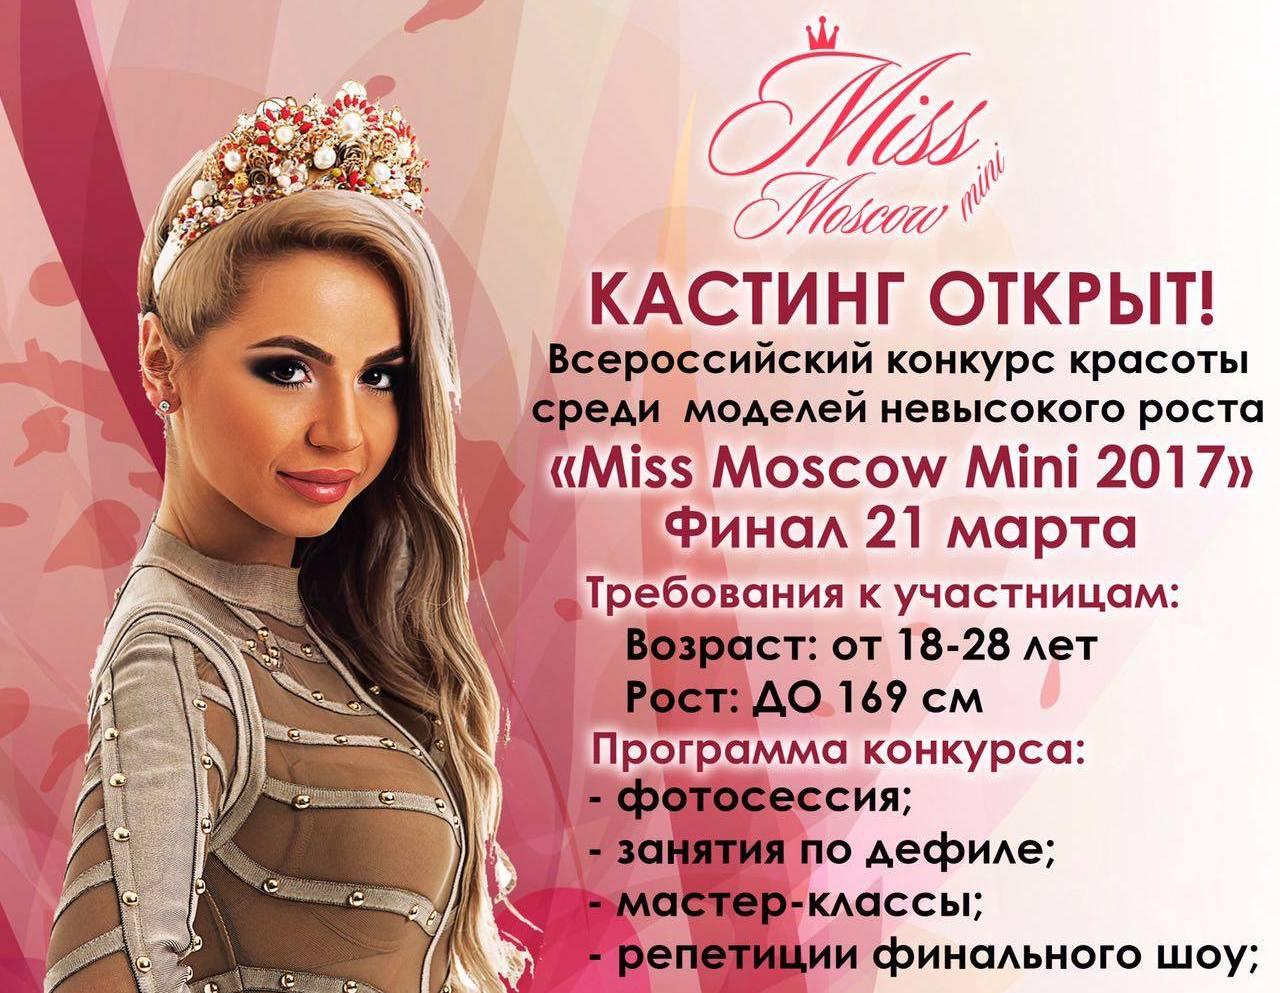 Конкурс красоты Miss Moscow mini 2017!